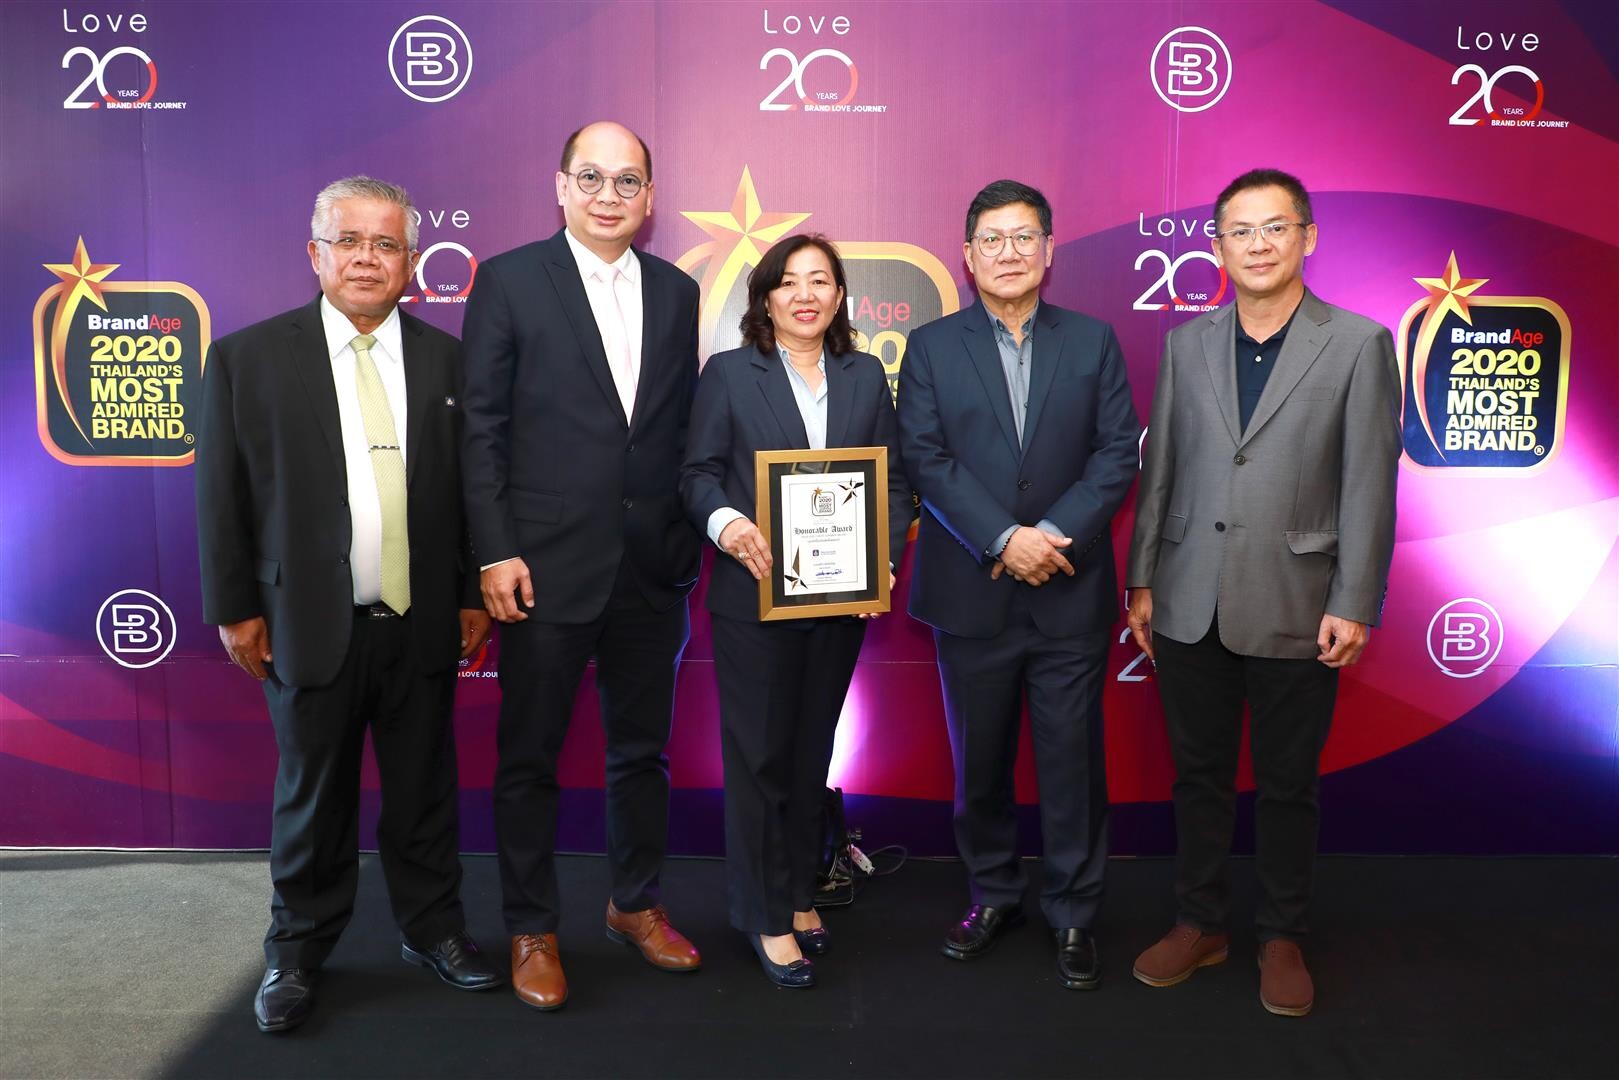 วิริยะประกันภัย รับรางวัล “Thailand's Most Admired Brand” ผู้นำกลุ่มประกันภัย ครองความน่าเชื่อถือสูงสุด 17 ปี ต่อเนื่อง